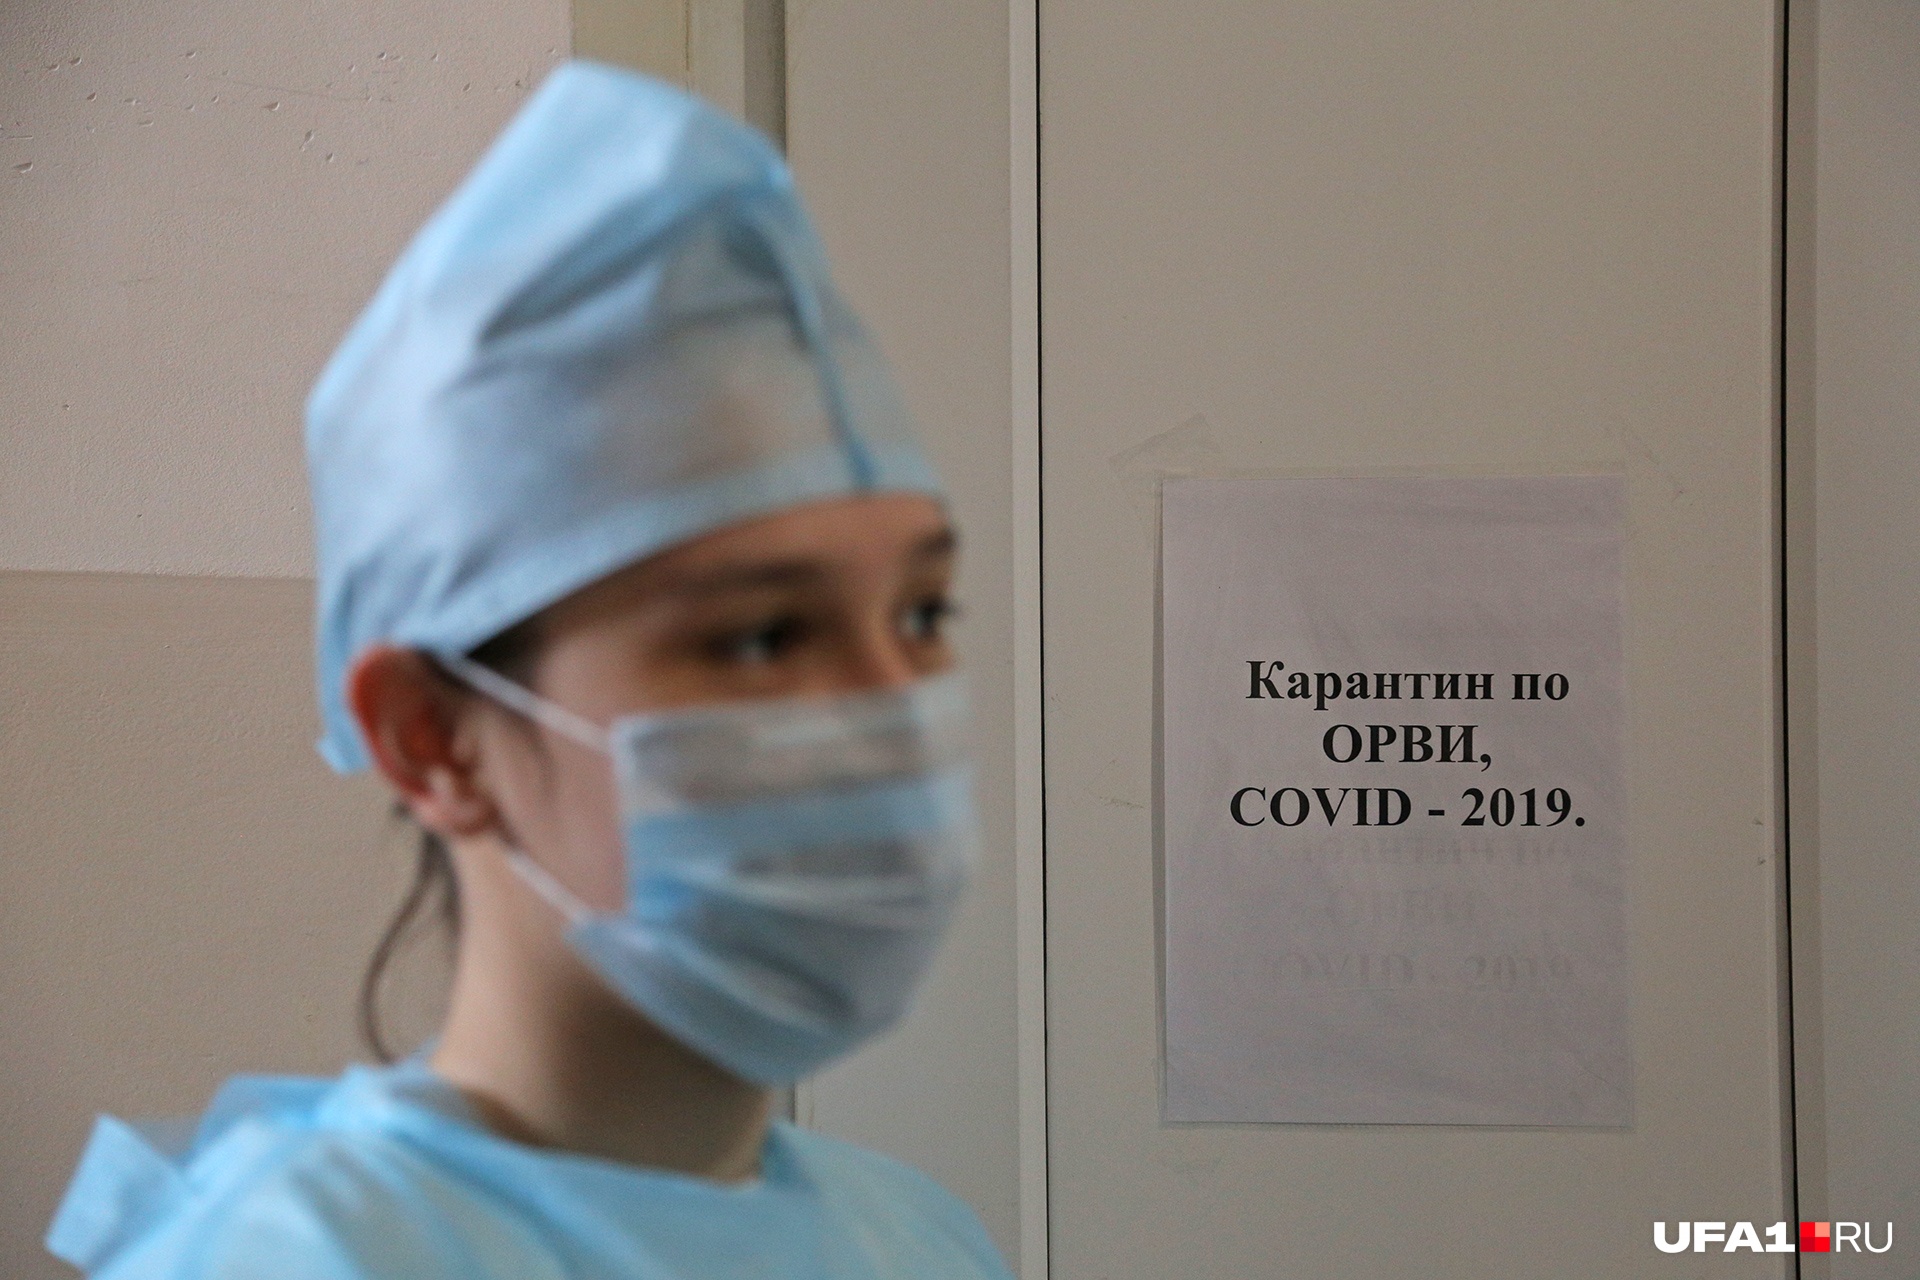 Уже в трех городах больше 100 заболевших: карта распространения коронавируса по Свердловской области